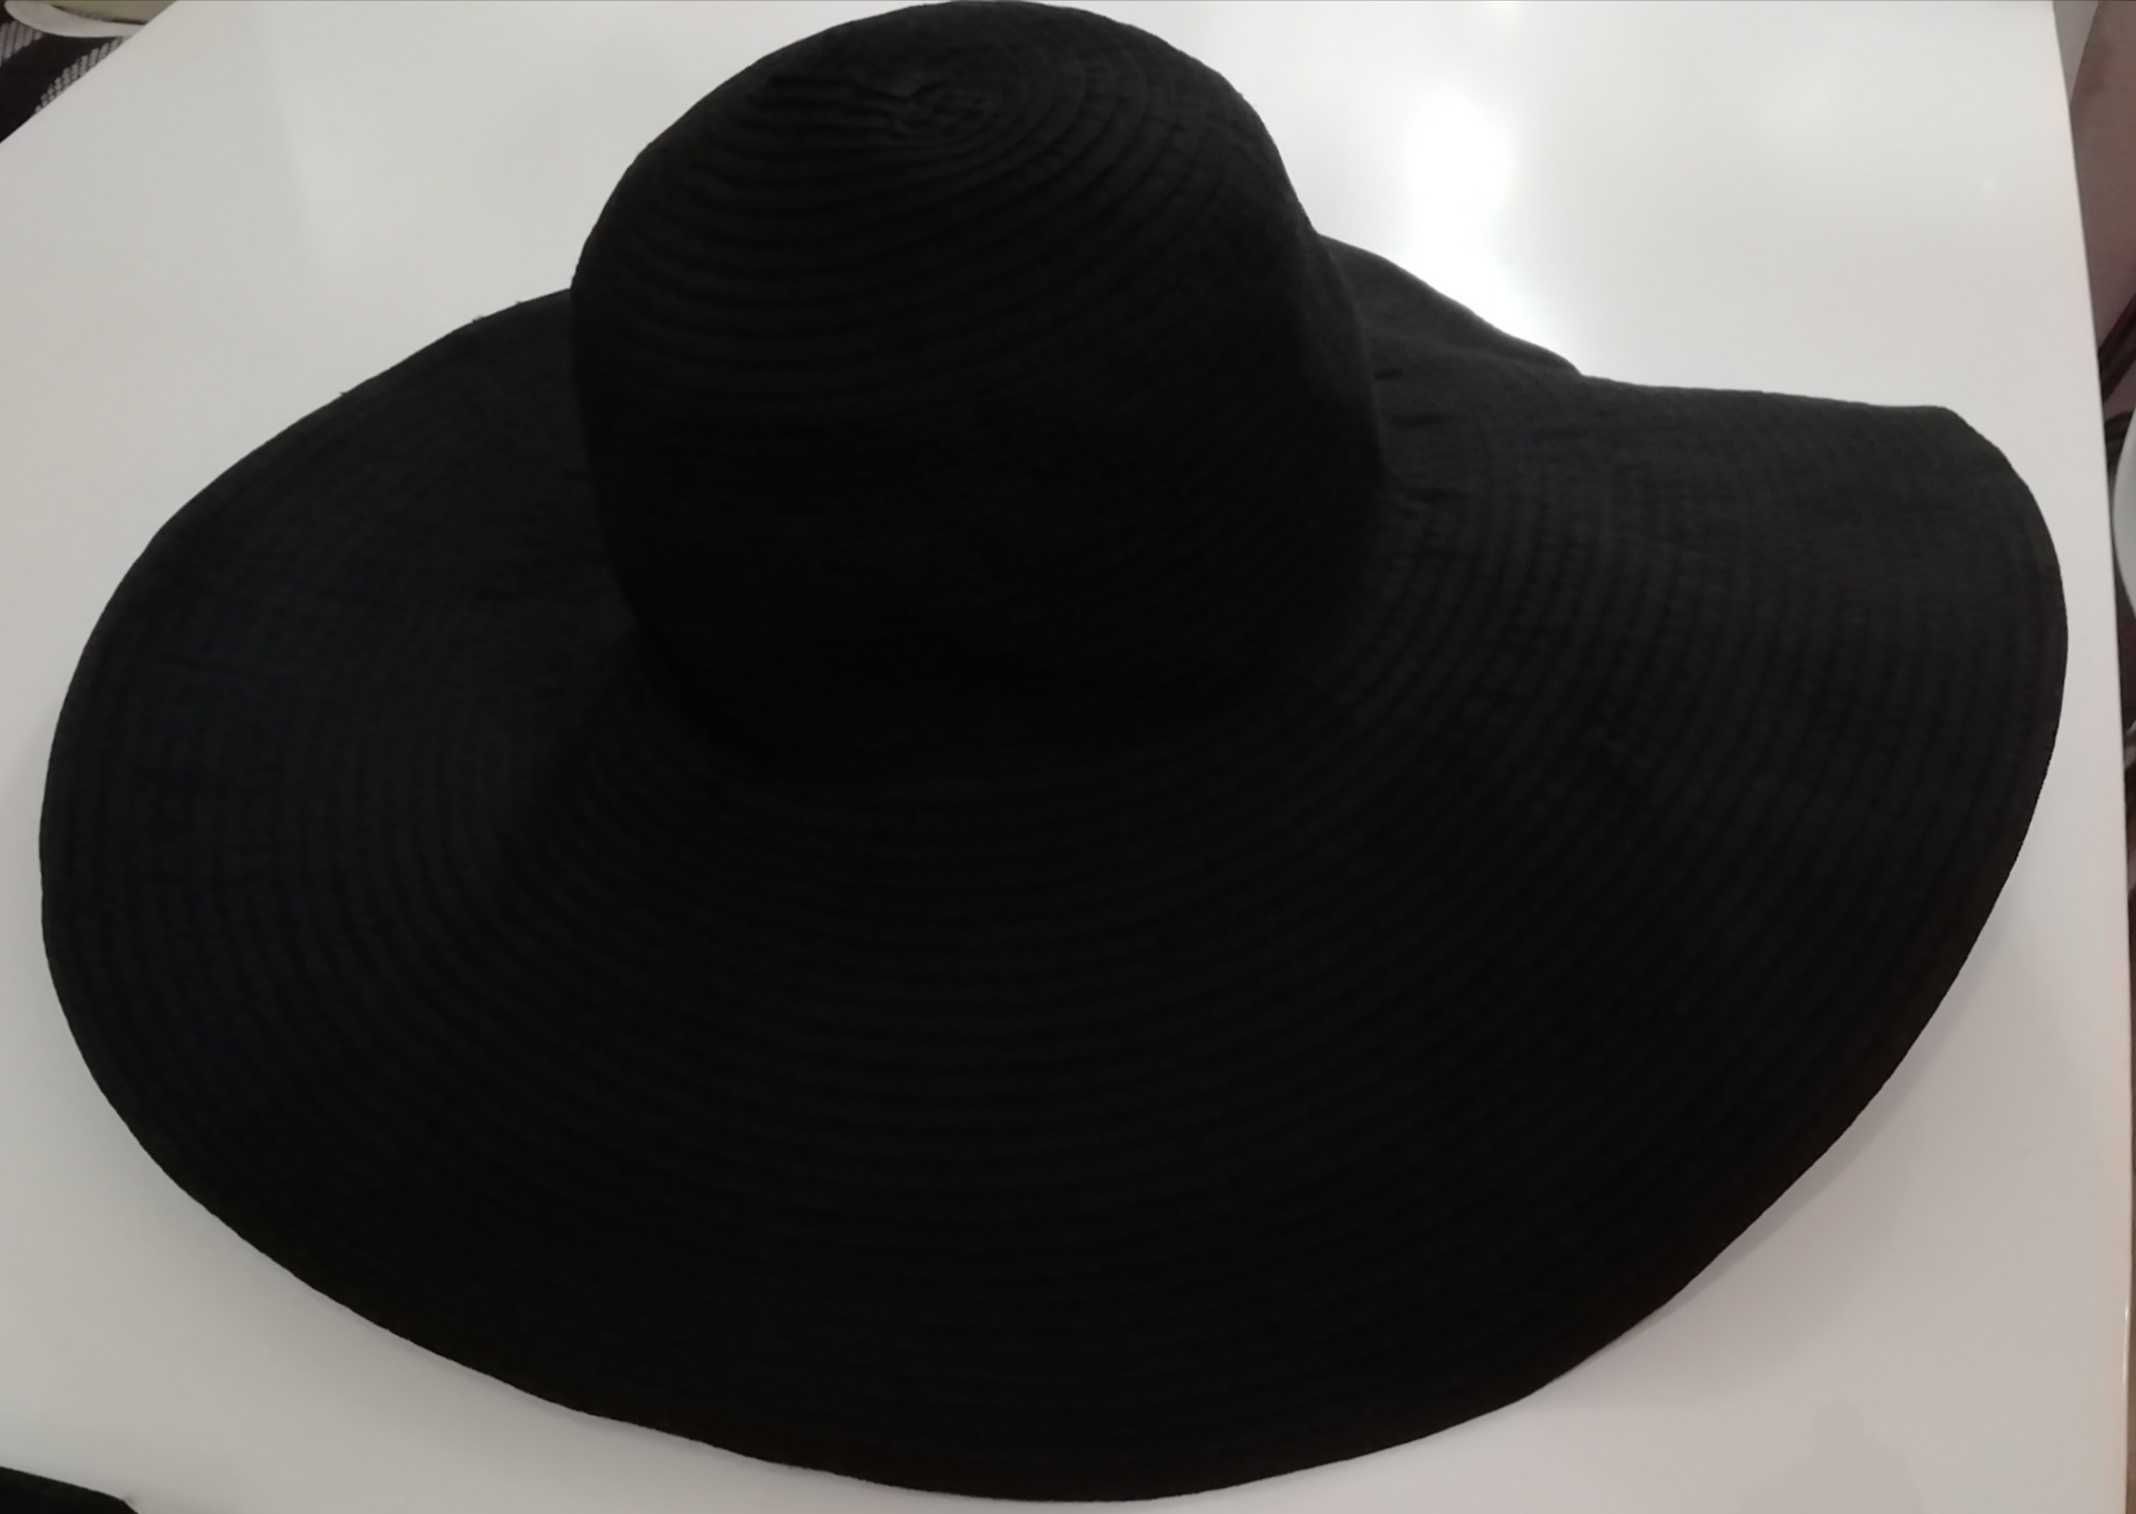 Letni czarny kapelusz duże rondo na letnie wyjazdy, wakacje i wyjścia